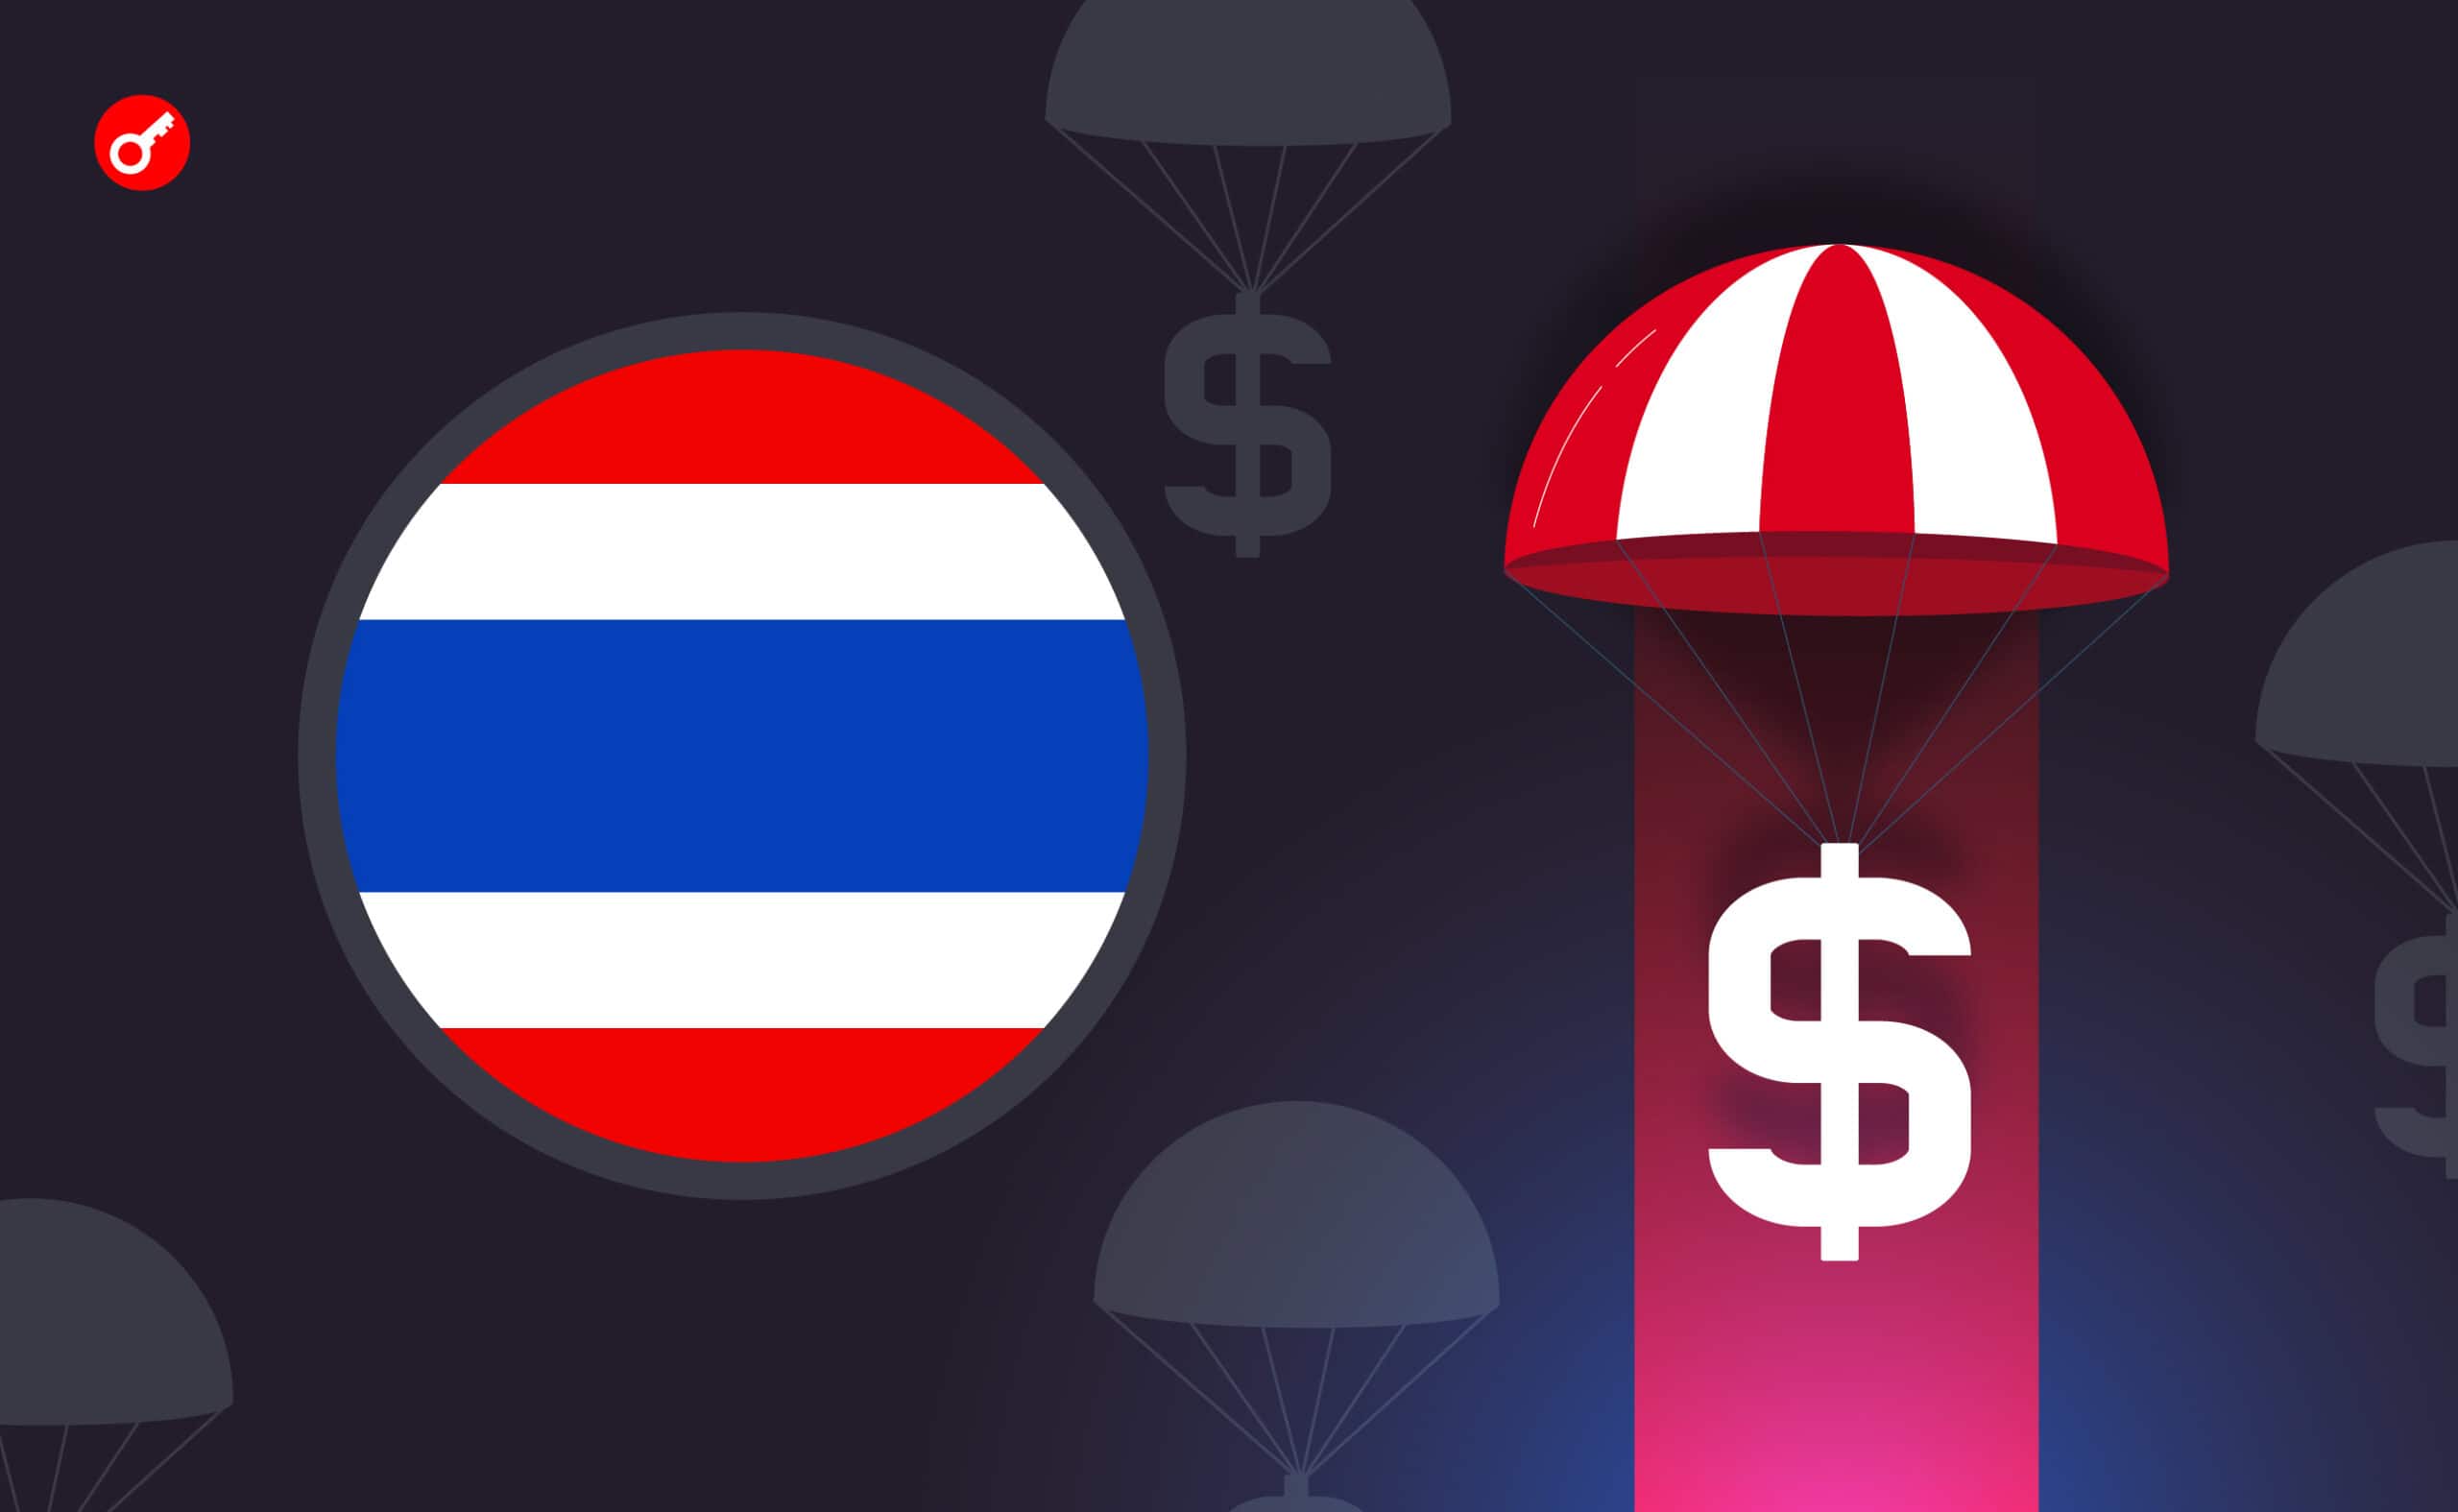 У Таїланді кожен громадянин отримає по $300 у криптовалюті. Головний колаж новини.